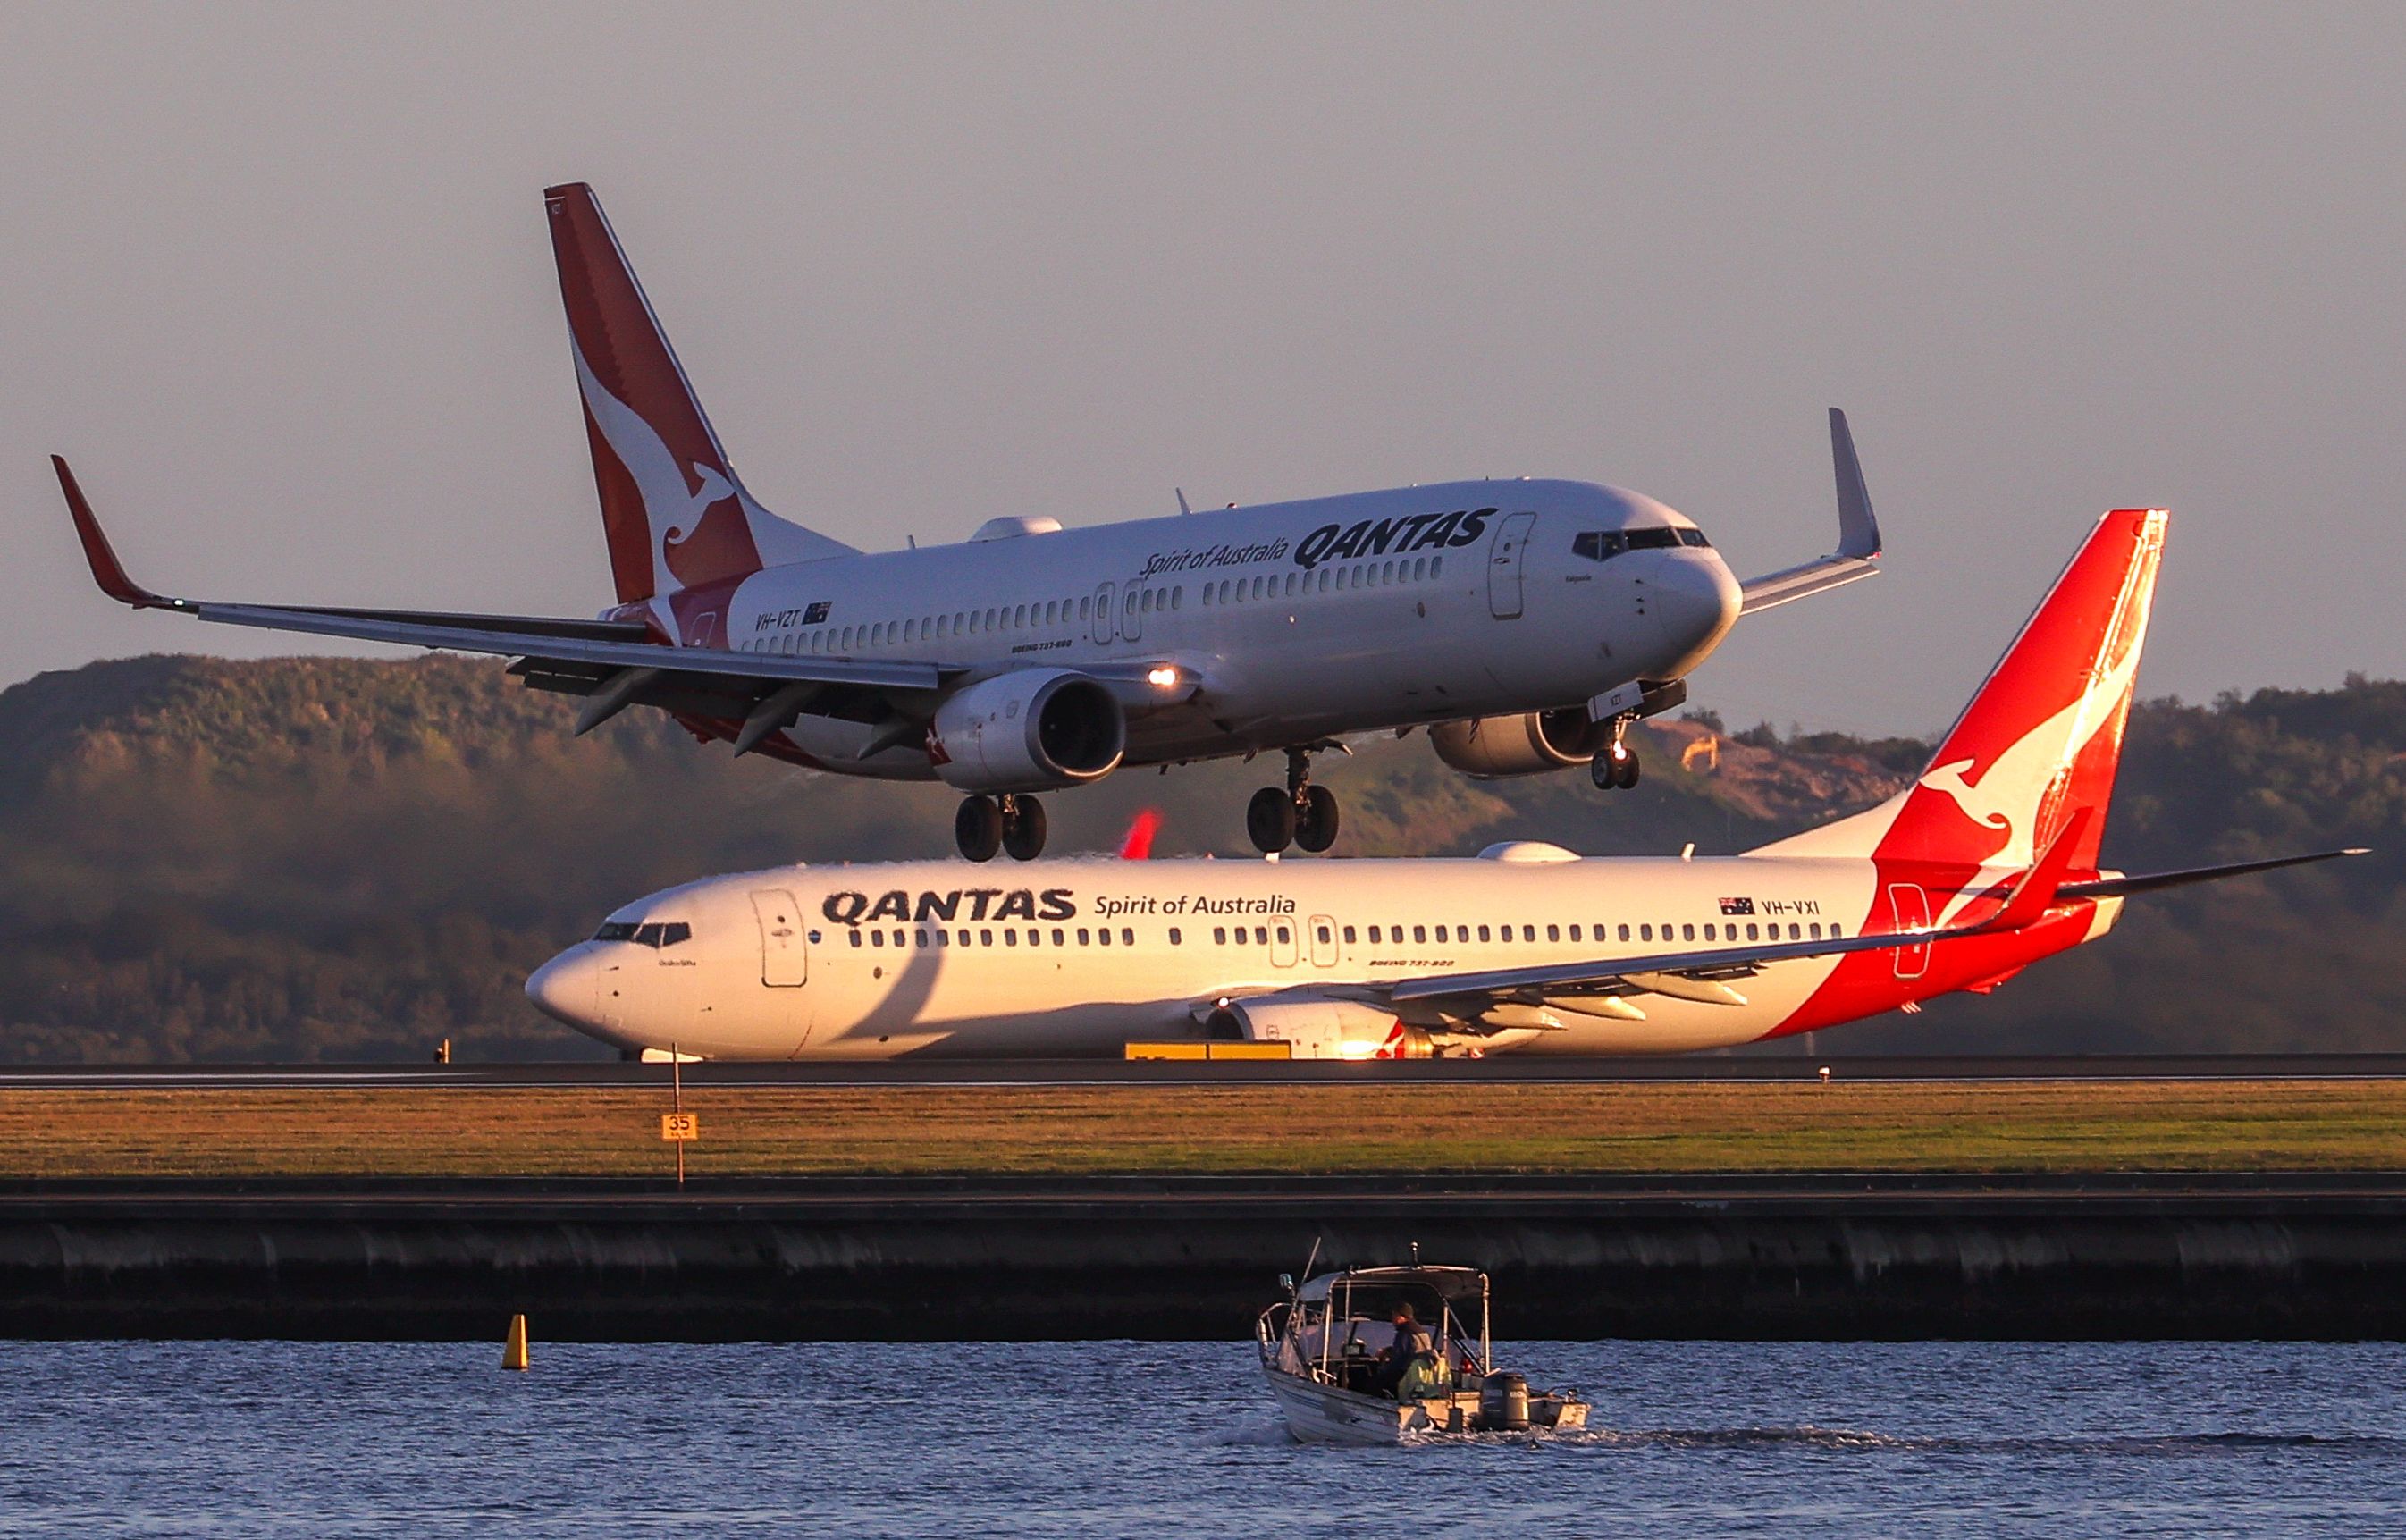 Two Qantas Boeing 737-800s